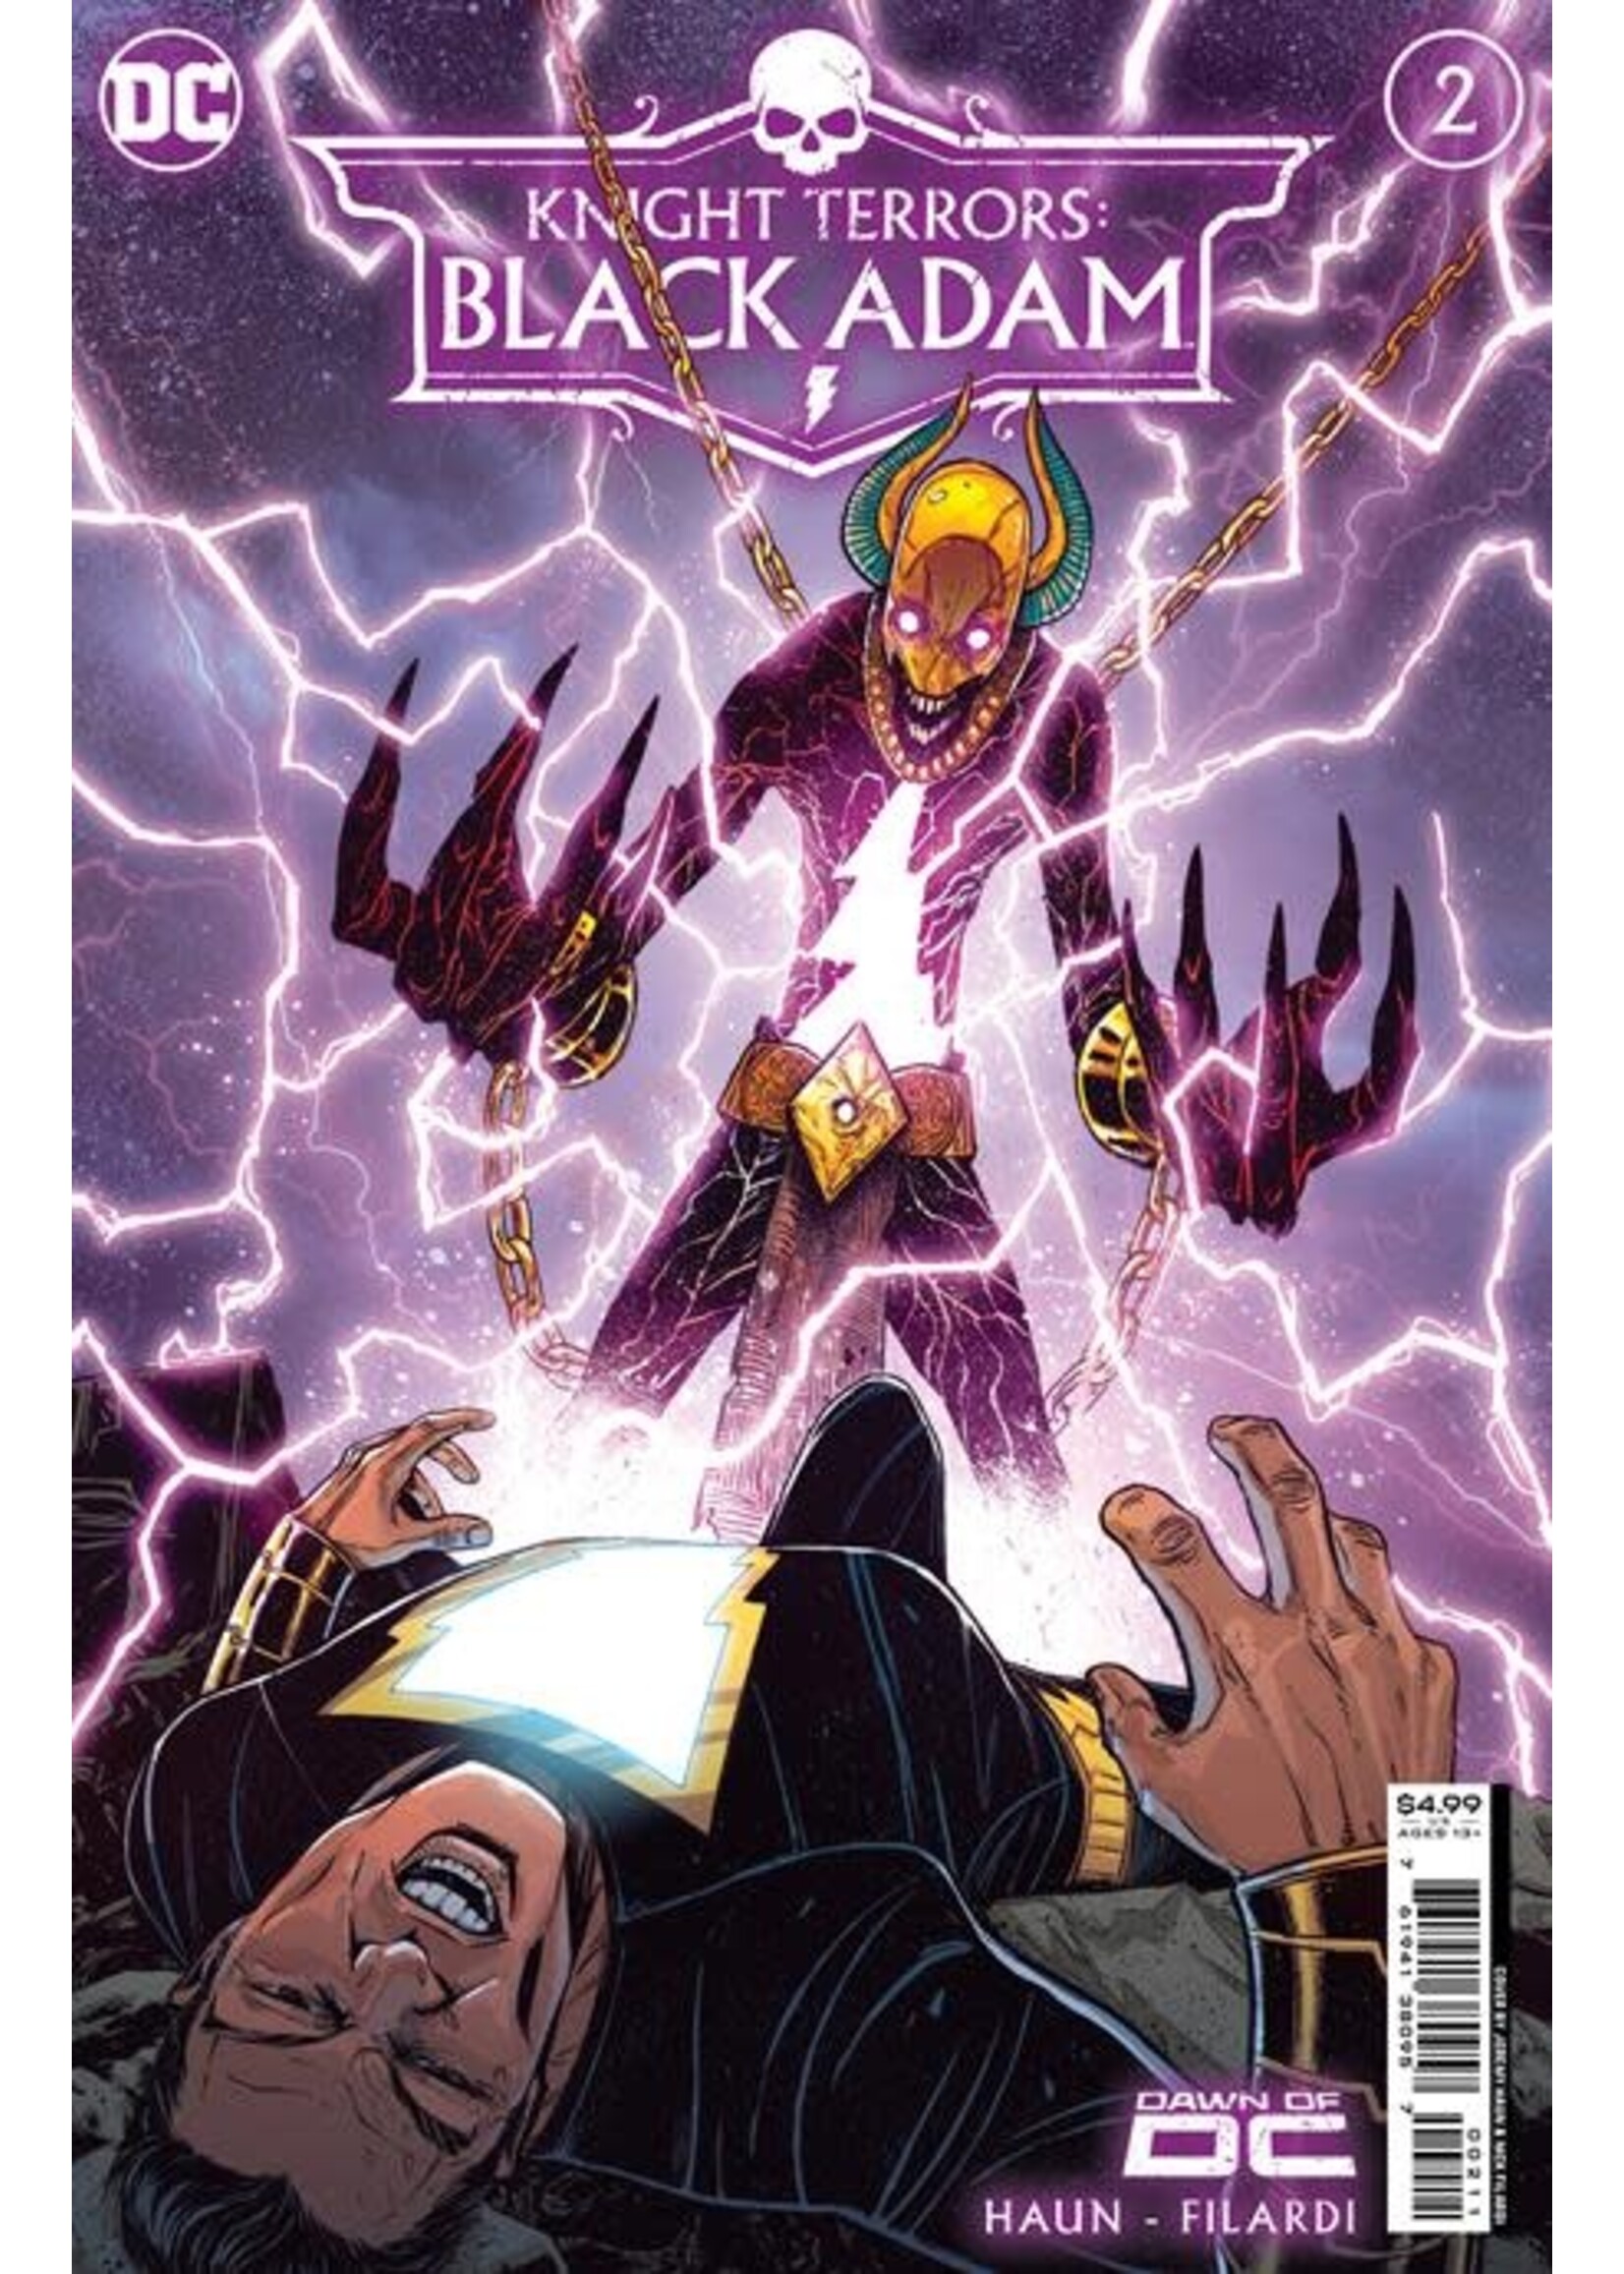 DC COMICS KNIGHT TERRORS BLACK ADAM #2